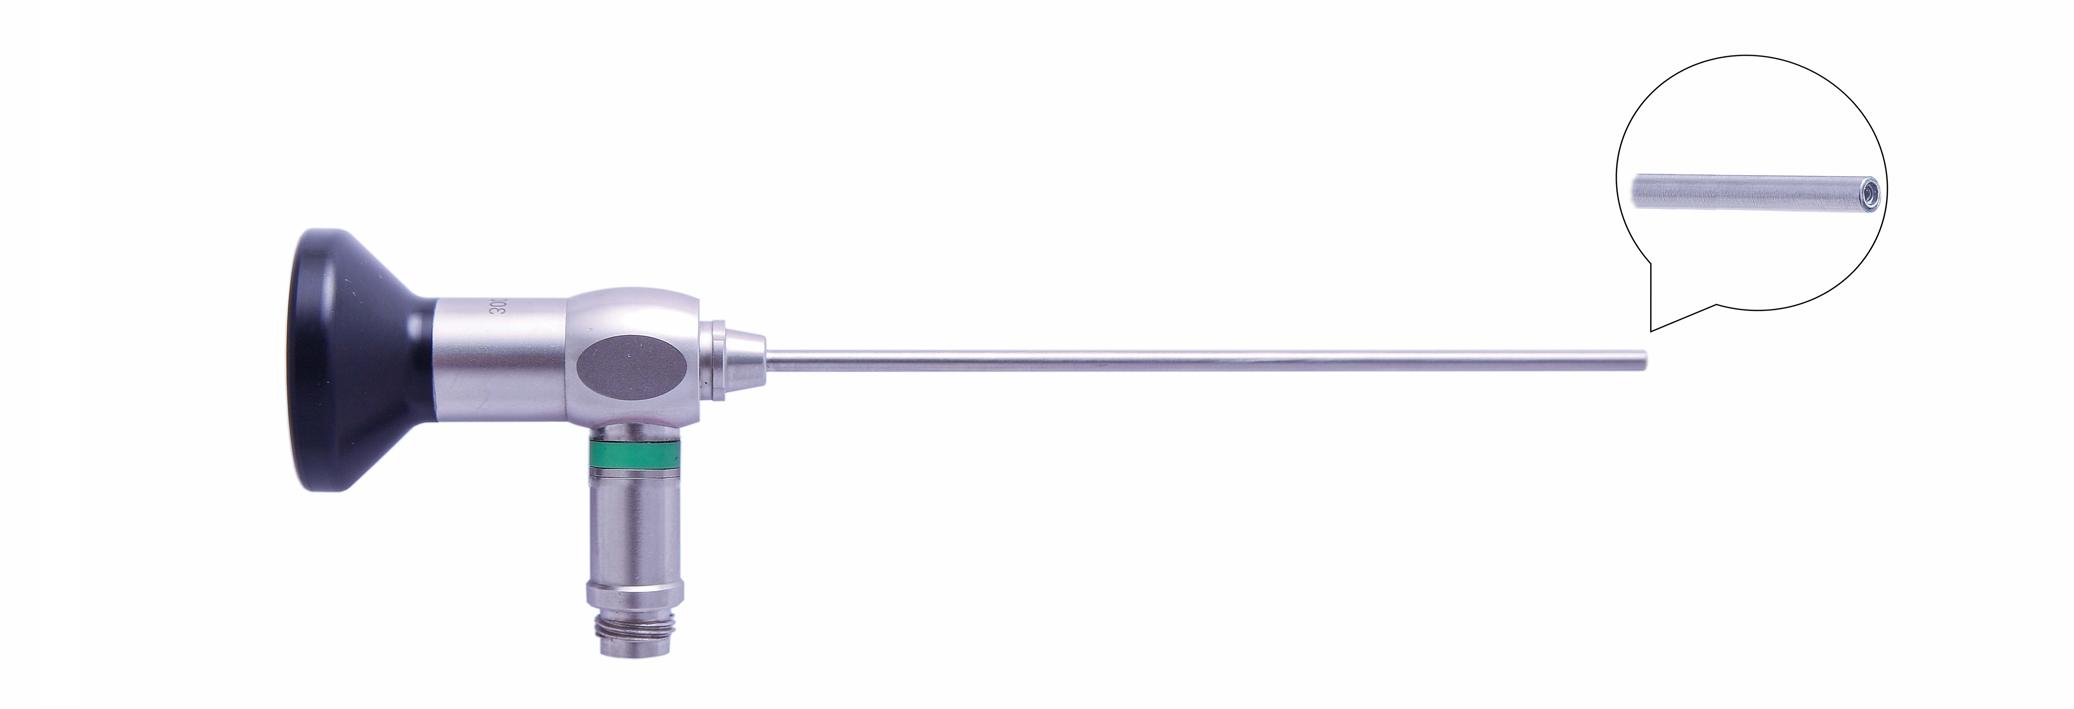 Трубка оптическая (артроскопическая, риноскопическая) ТОАР-012 диам. 4 мм, с углом наблюдения 0 гр. (дл. 110 мм)